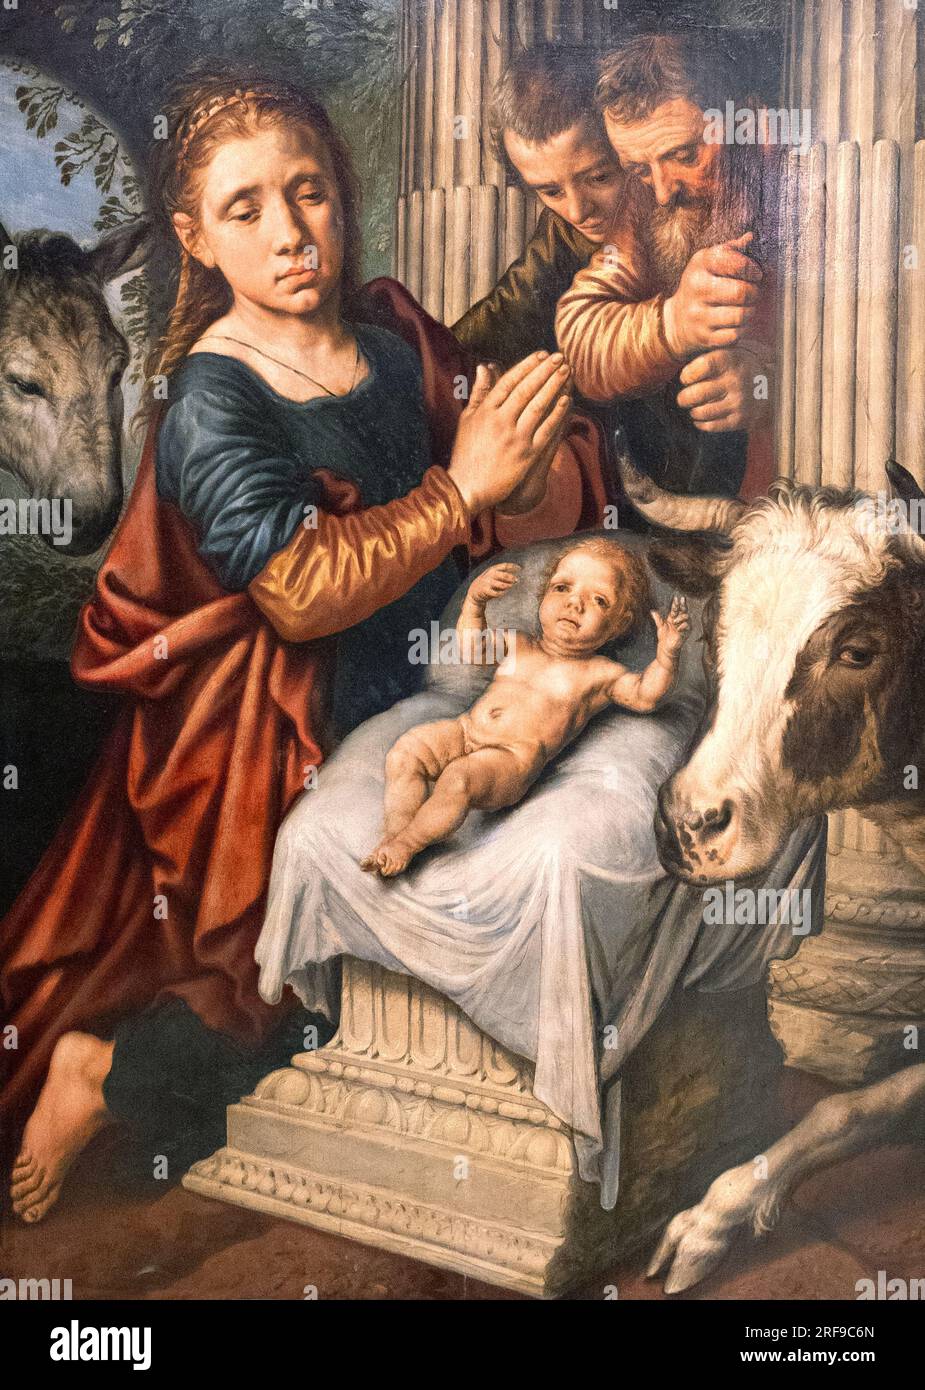 Pieter Aertsen Gemälde; L'Adoration des Bergers - die Verehrung der Hirten; niederländischer Maler aus dem 16. Jahrhundert, 1508-1575 Stockfoto